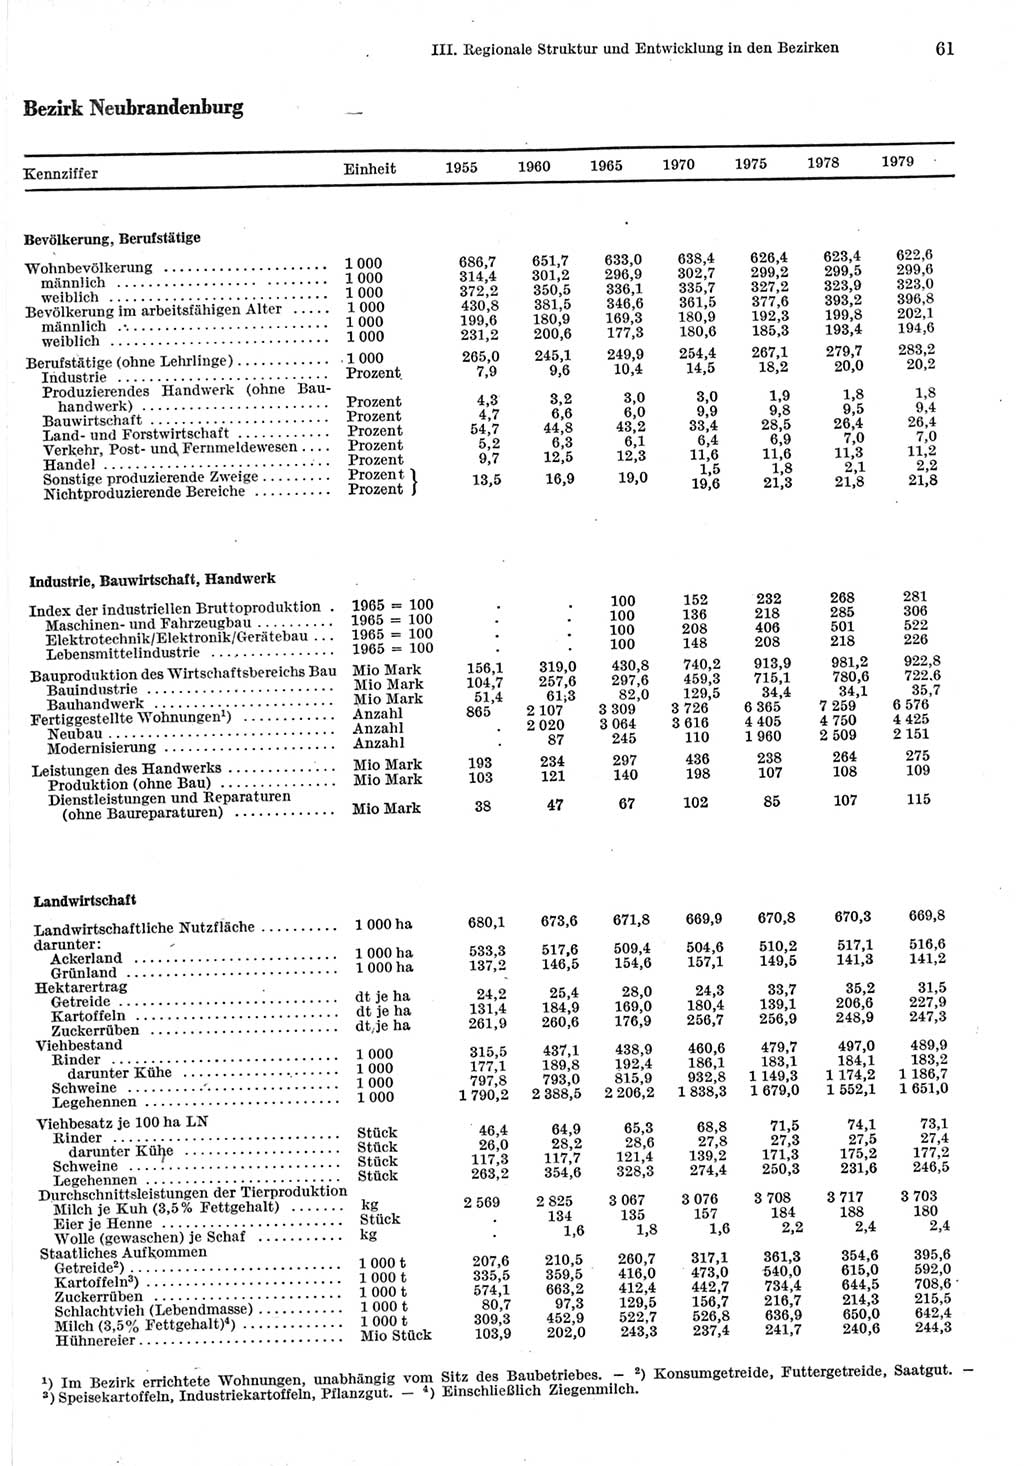 Statistisches Jahrbuch der Deutschen Demokratischen Republik (DDR) 1980, Seite 61 (Stat. Jb. DDR 1980, S. 61)